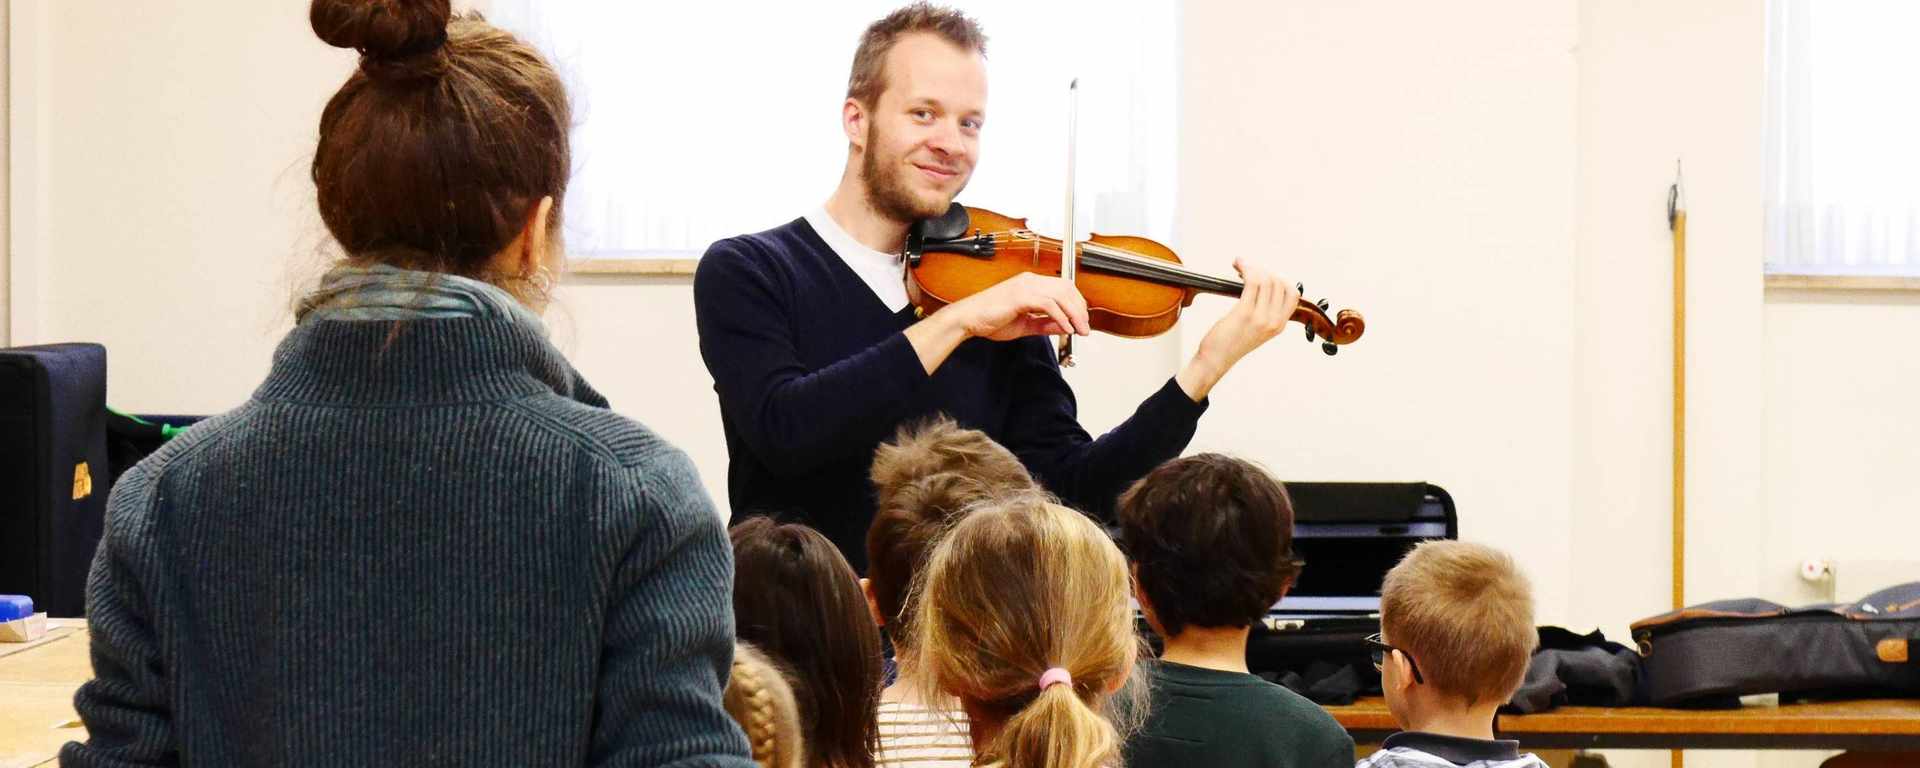 Geigenunterricht für Kinder, Jugendliche, Studierende - im Studio in Basel